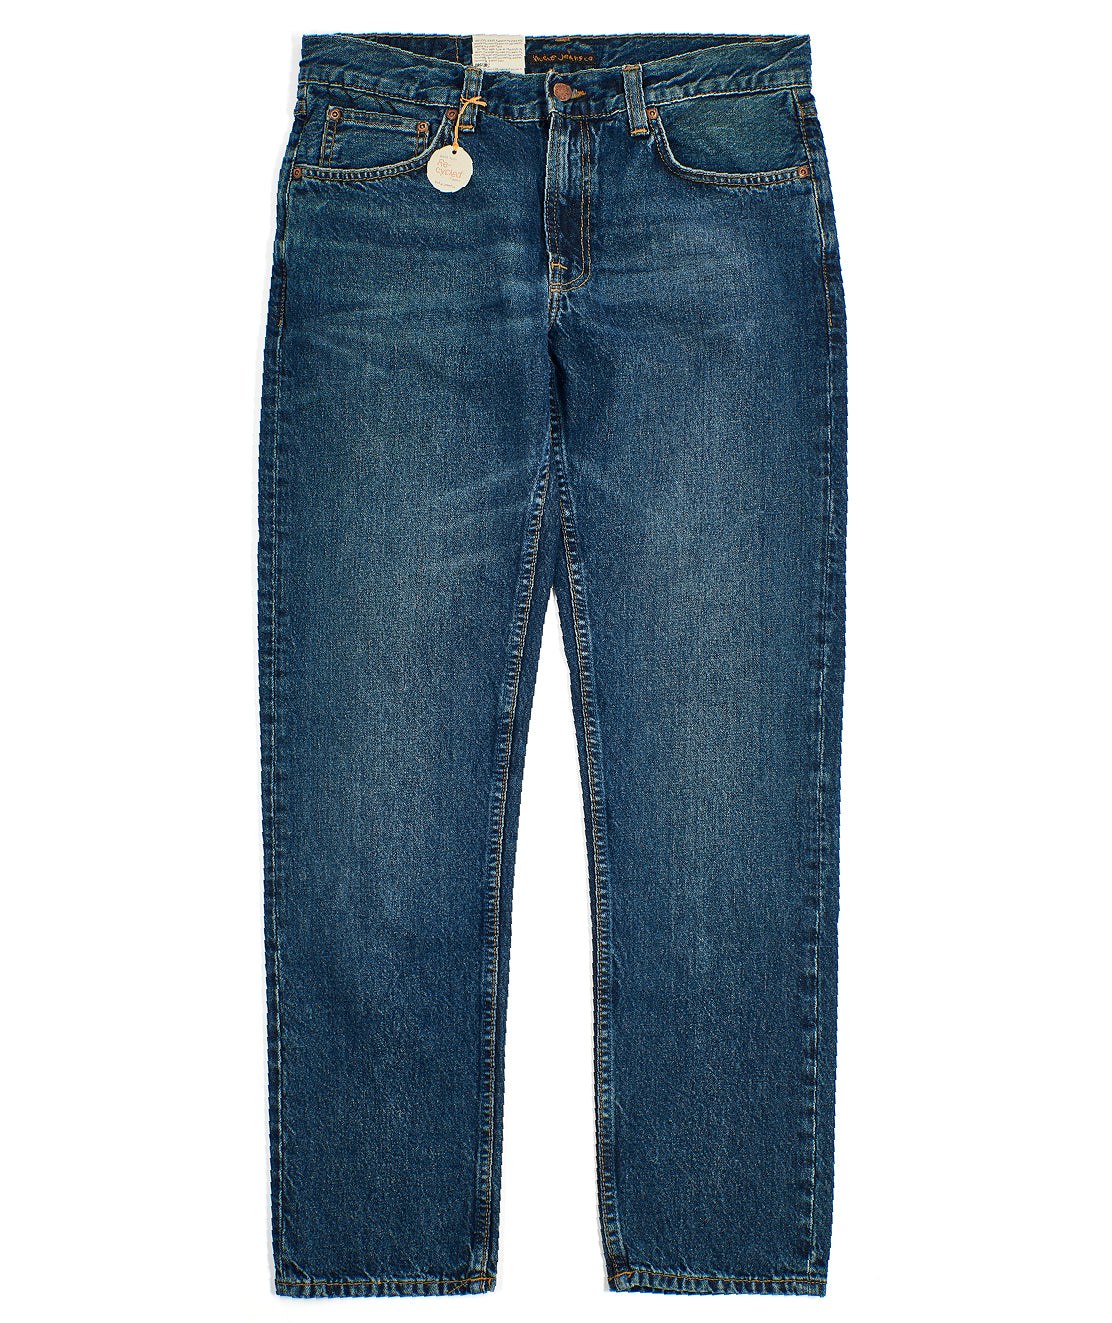 Blue Slate Gritty Jackson Jeans